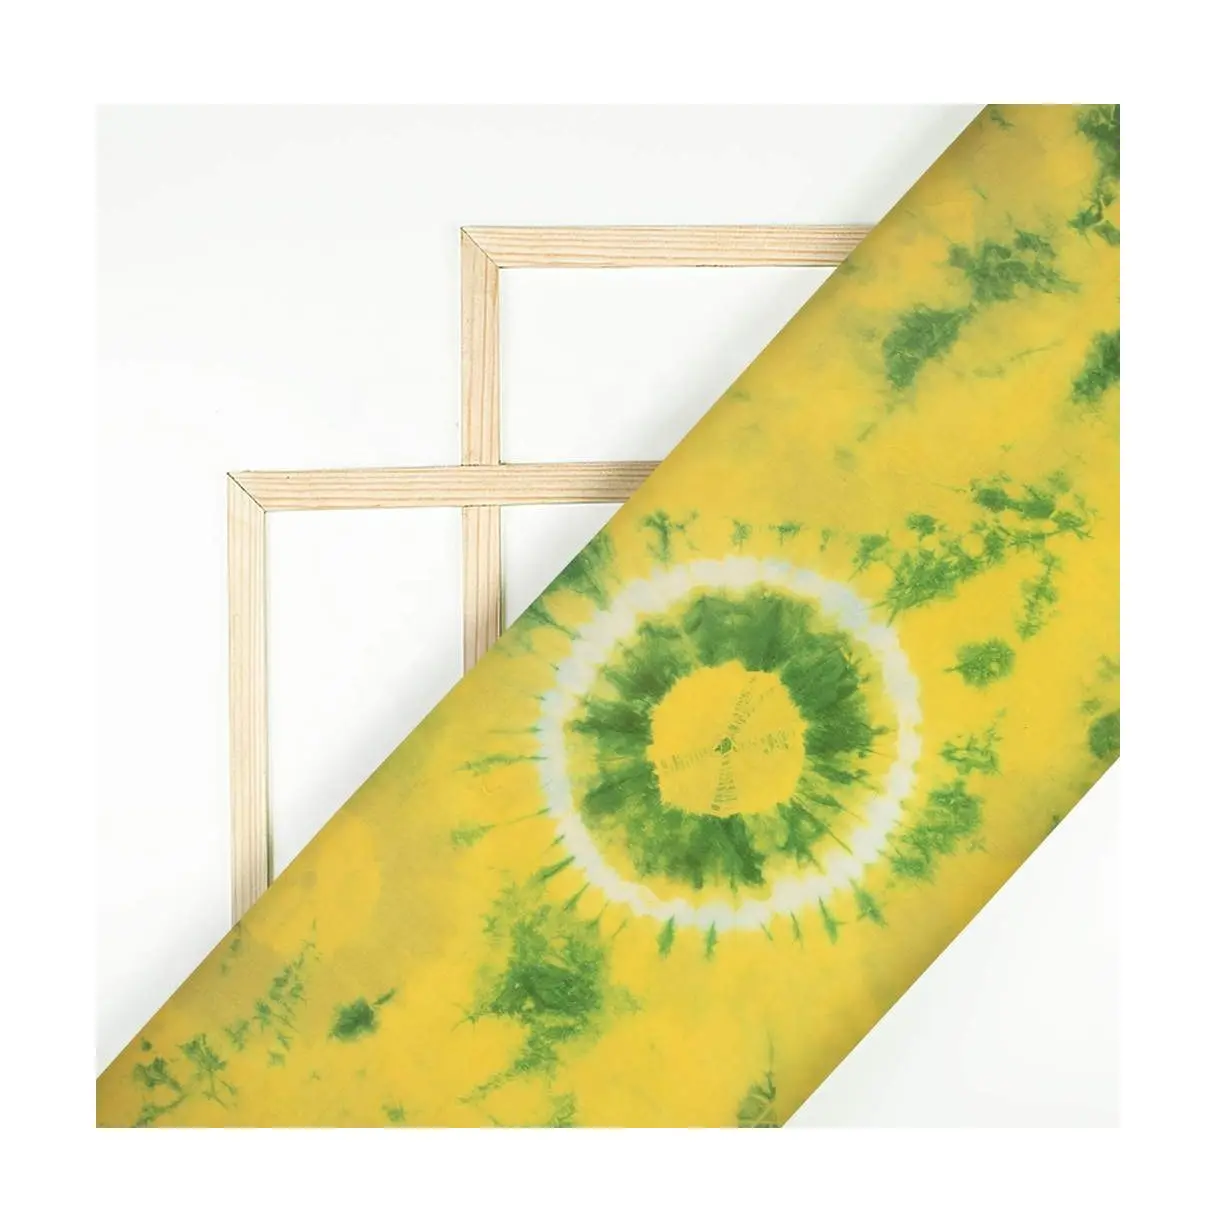 Tela de algodón suave para teñir ropa de mujer, tejido de teñido de verduras naturales, Color amarillo limón y verde, peso ligero